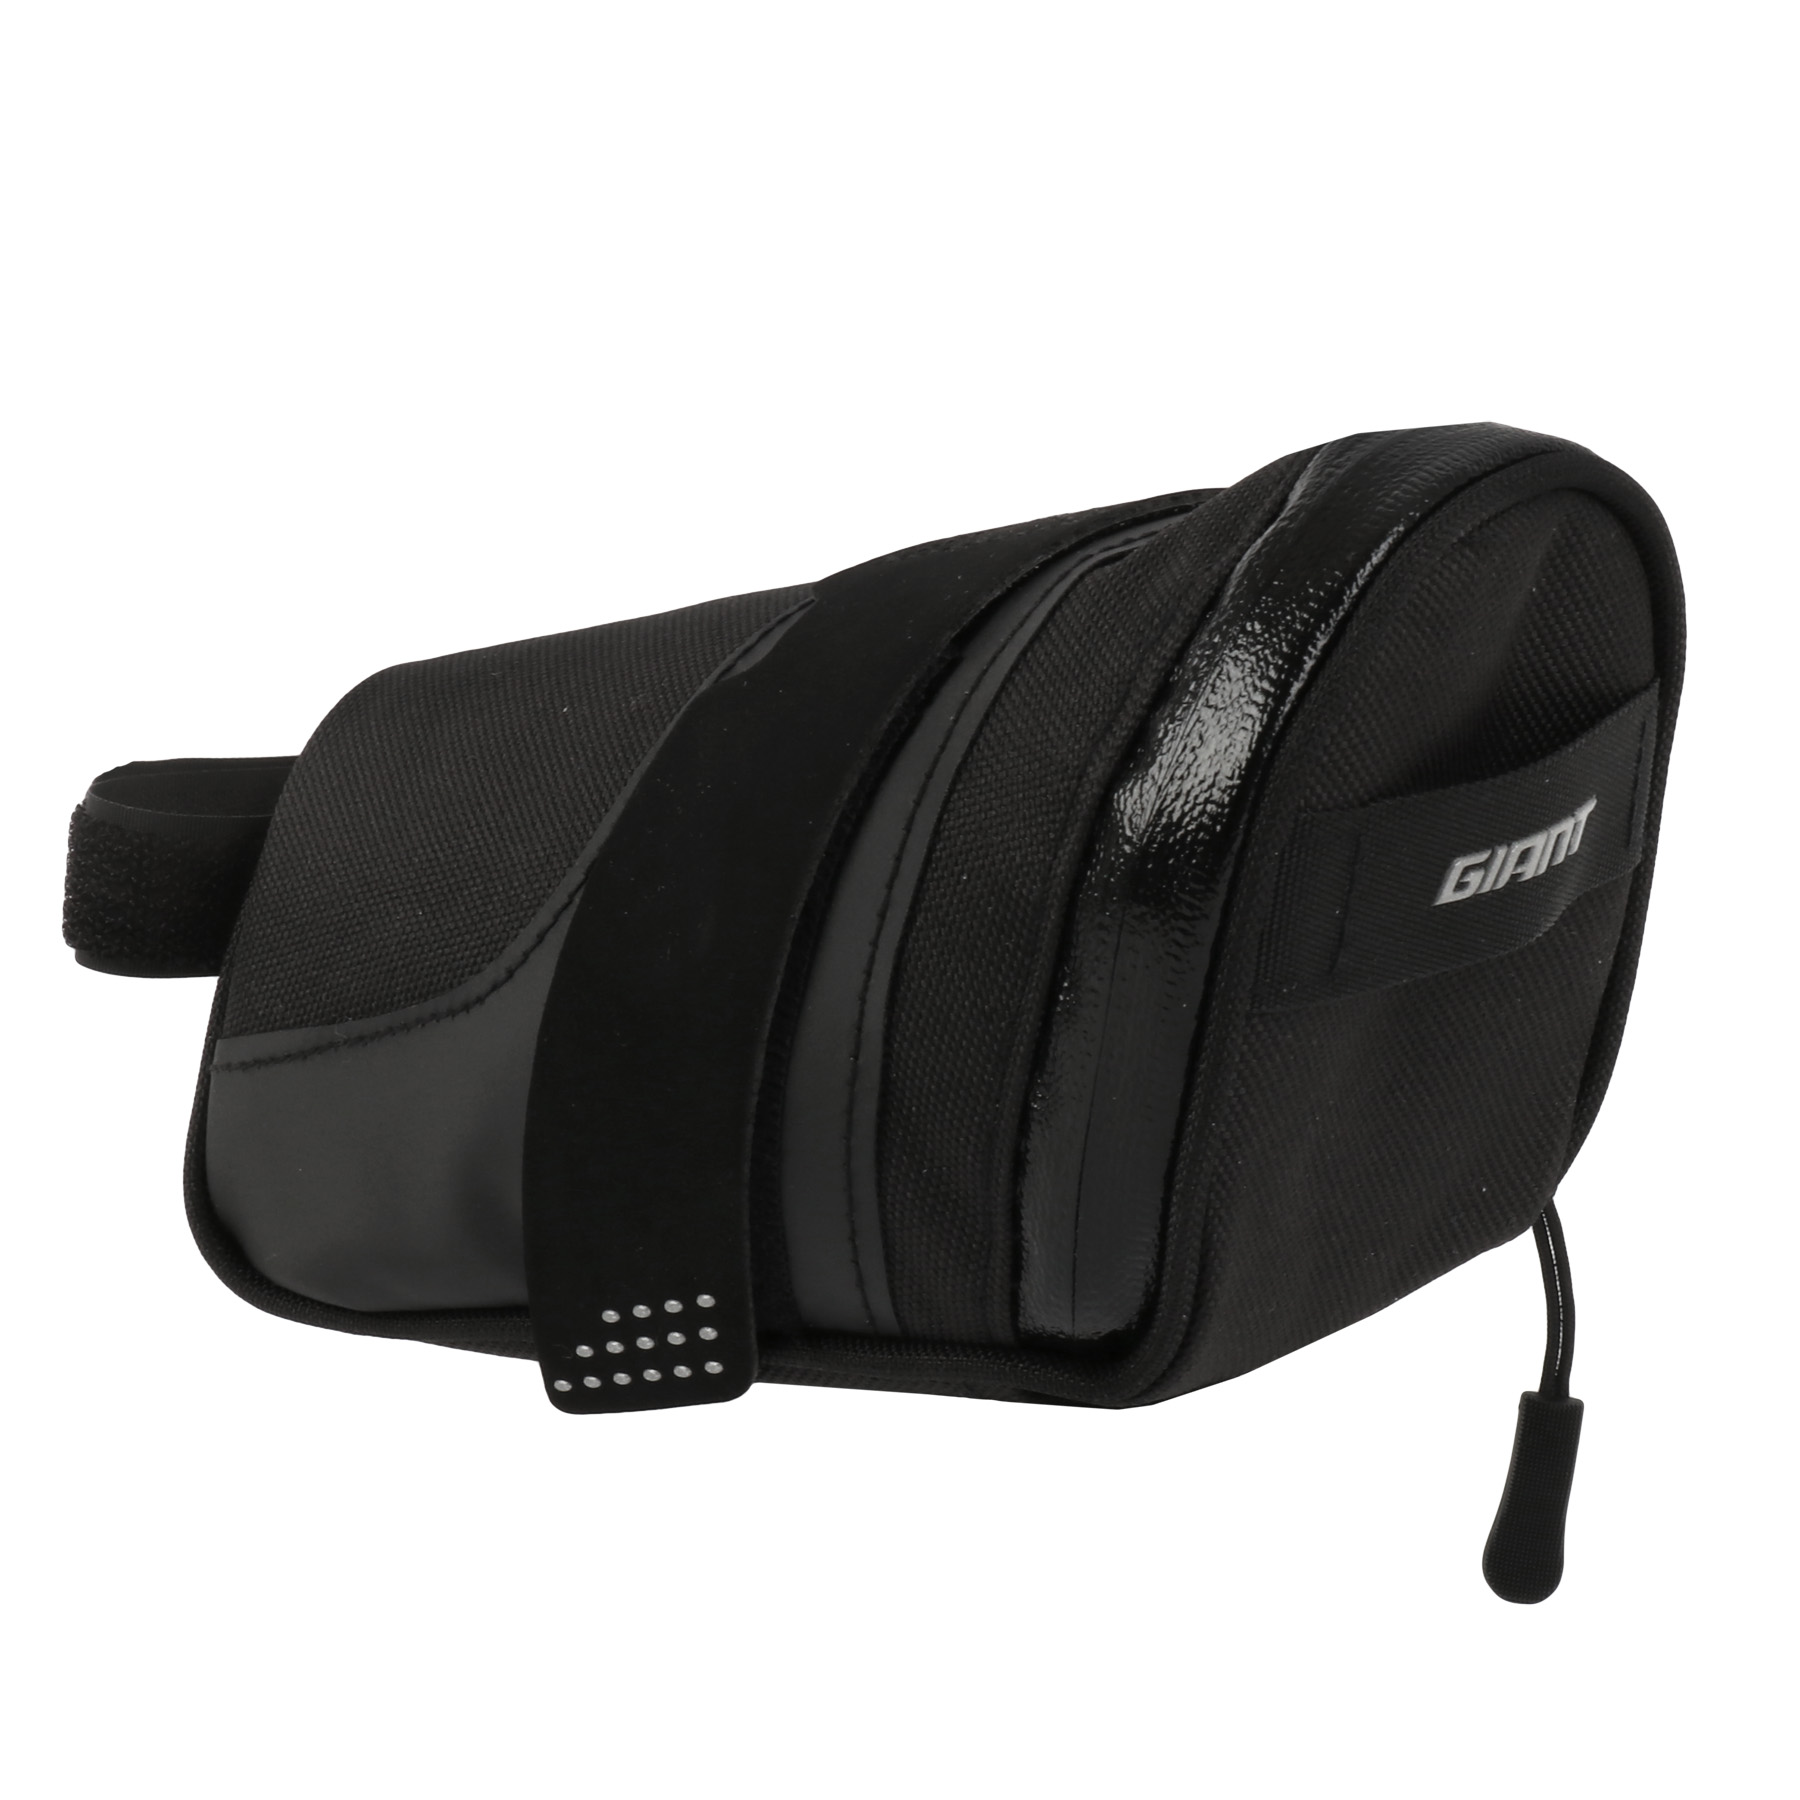 Produktbild von Giant Shadow DX Seat Bag L Satteltasche